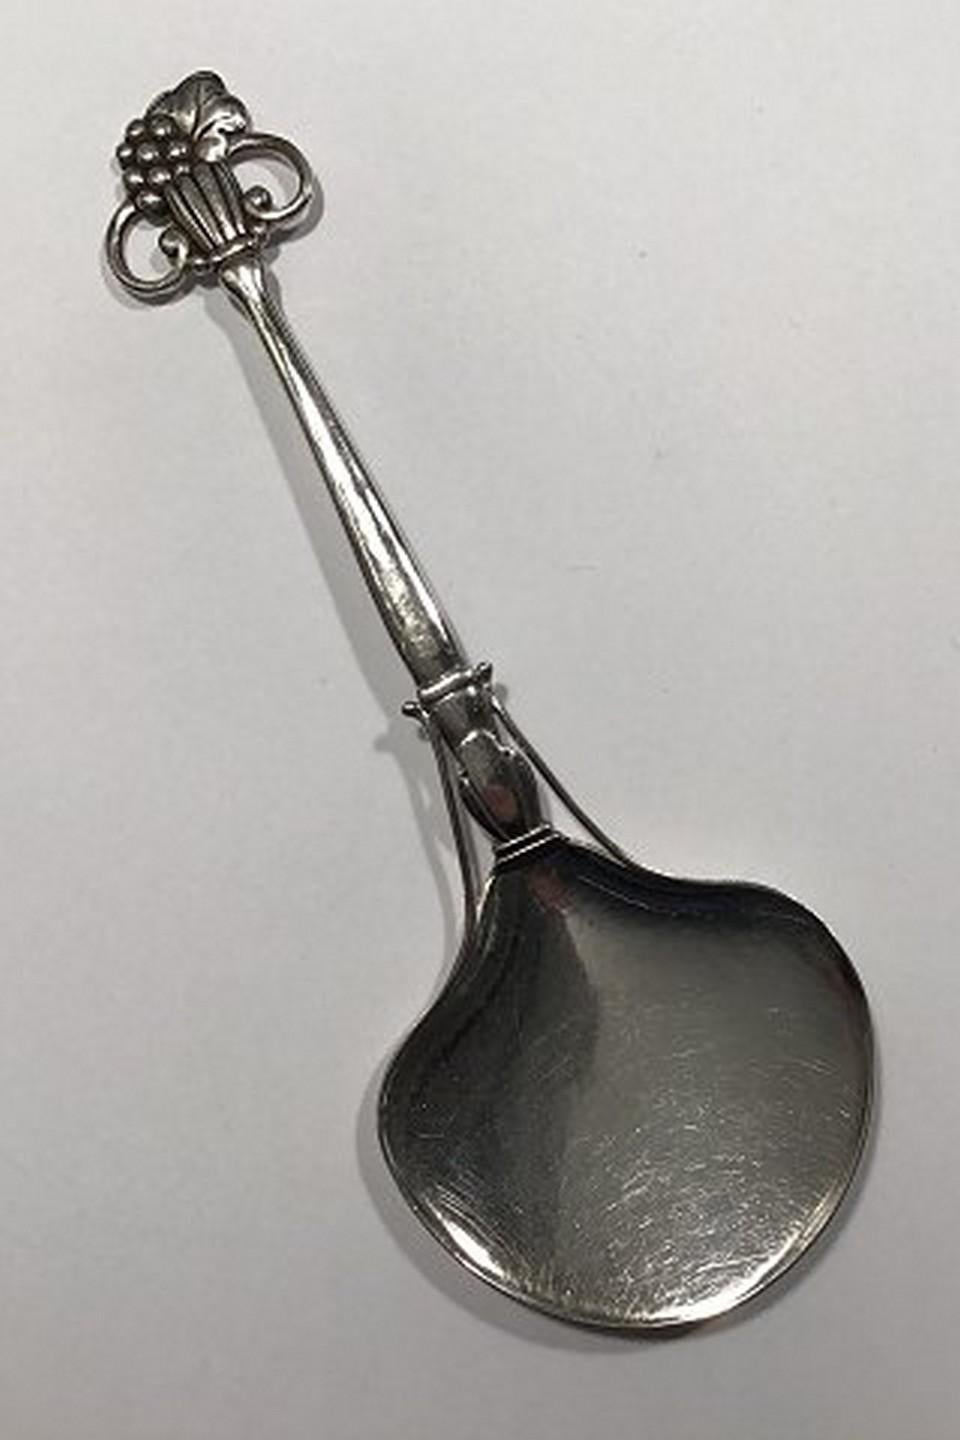 Kay Bojesen silver server, ornamental. Measures 19 cm (7½ in)
Item no.: 436269.